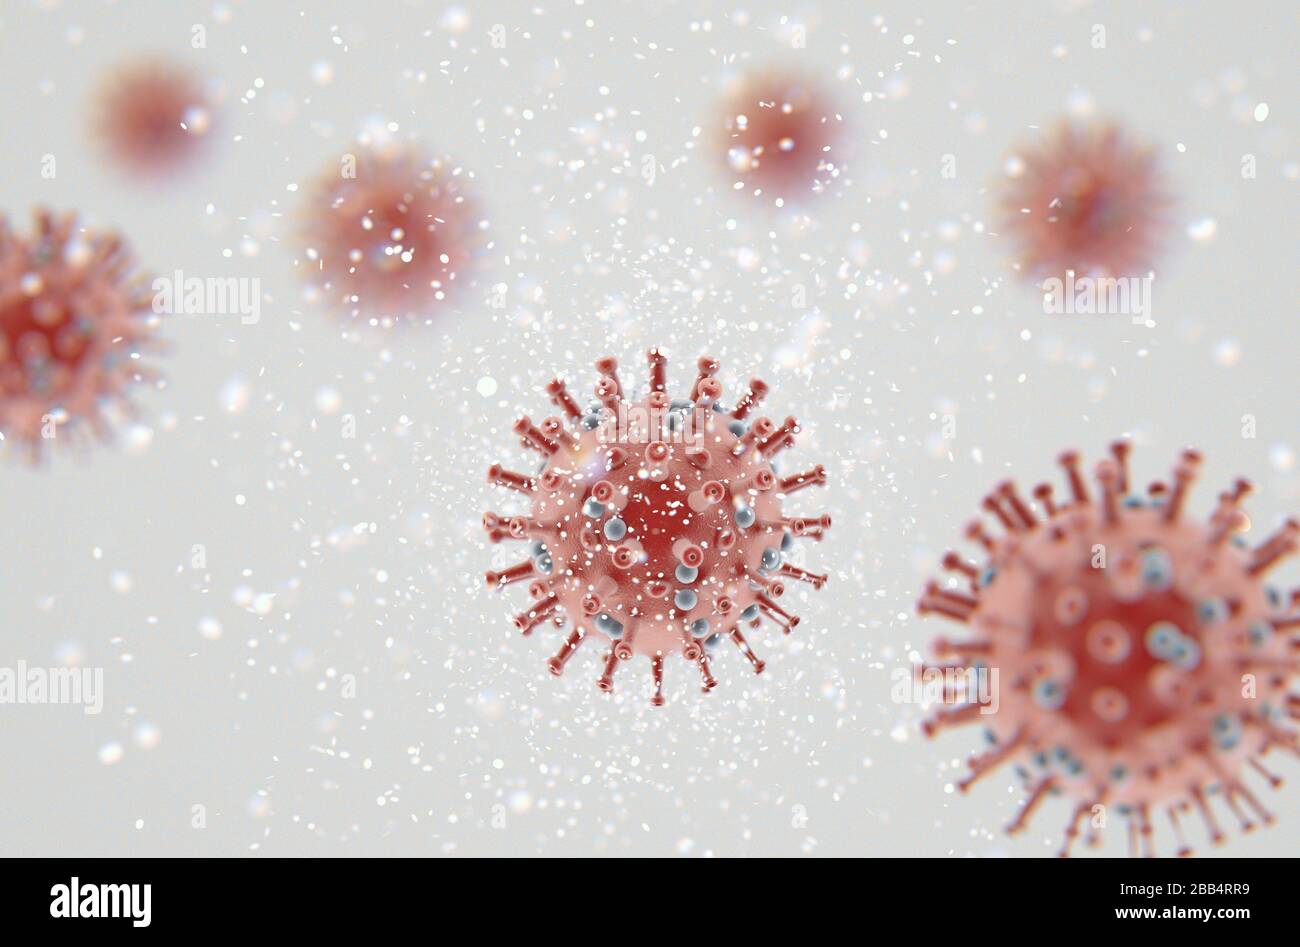 Eine mikroskopische Nahaufnahme von roten Coronavirus-Partikeln in der Luft - 3D-Rendering Stockfoto